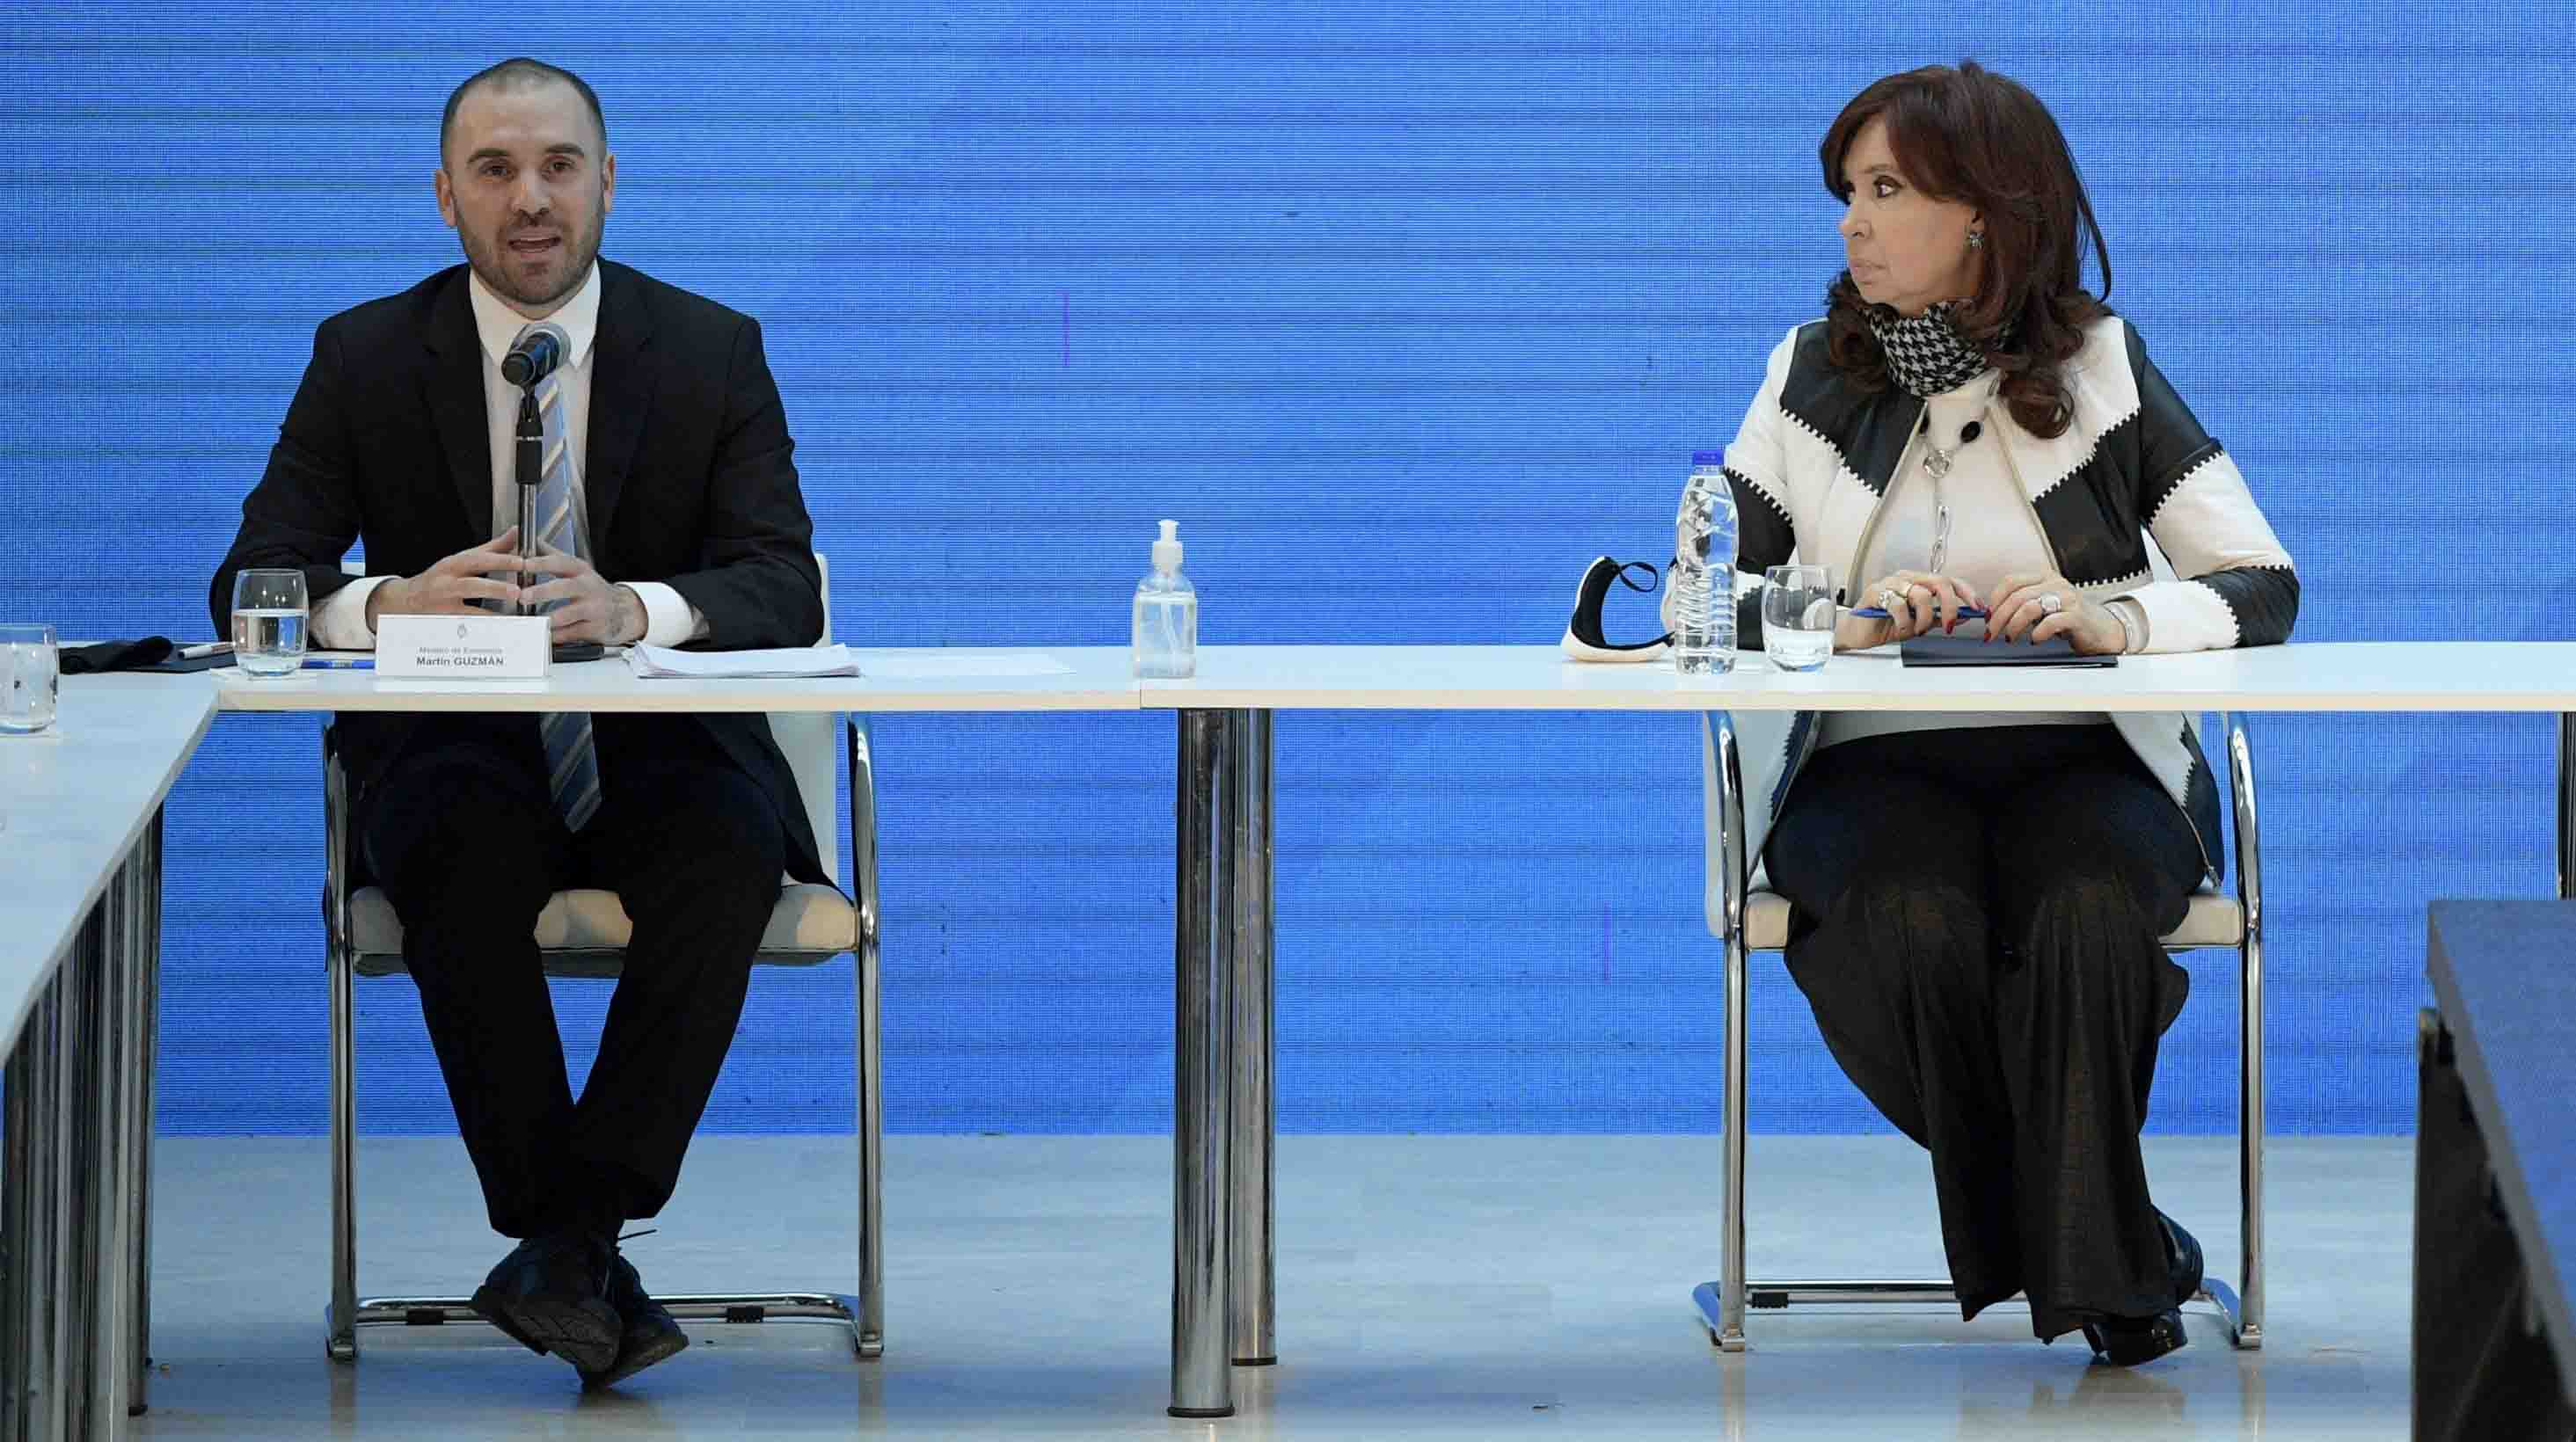 El ministro de Economía Martín Guzmán fue señalado por Cristina Kirchner, pero logró continuar en su cargo. (Foto: Juan Mabromata/Reuters).